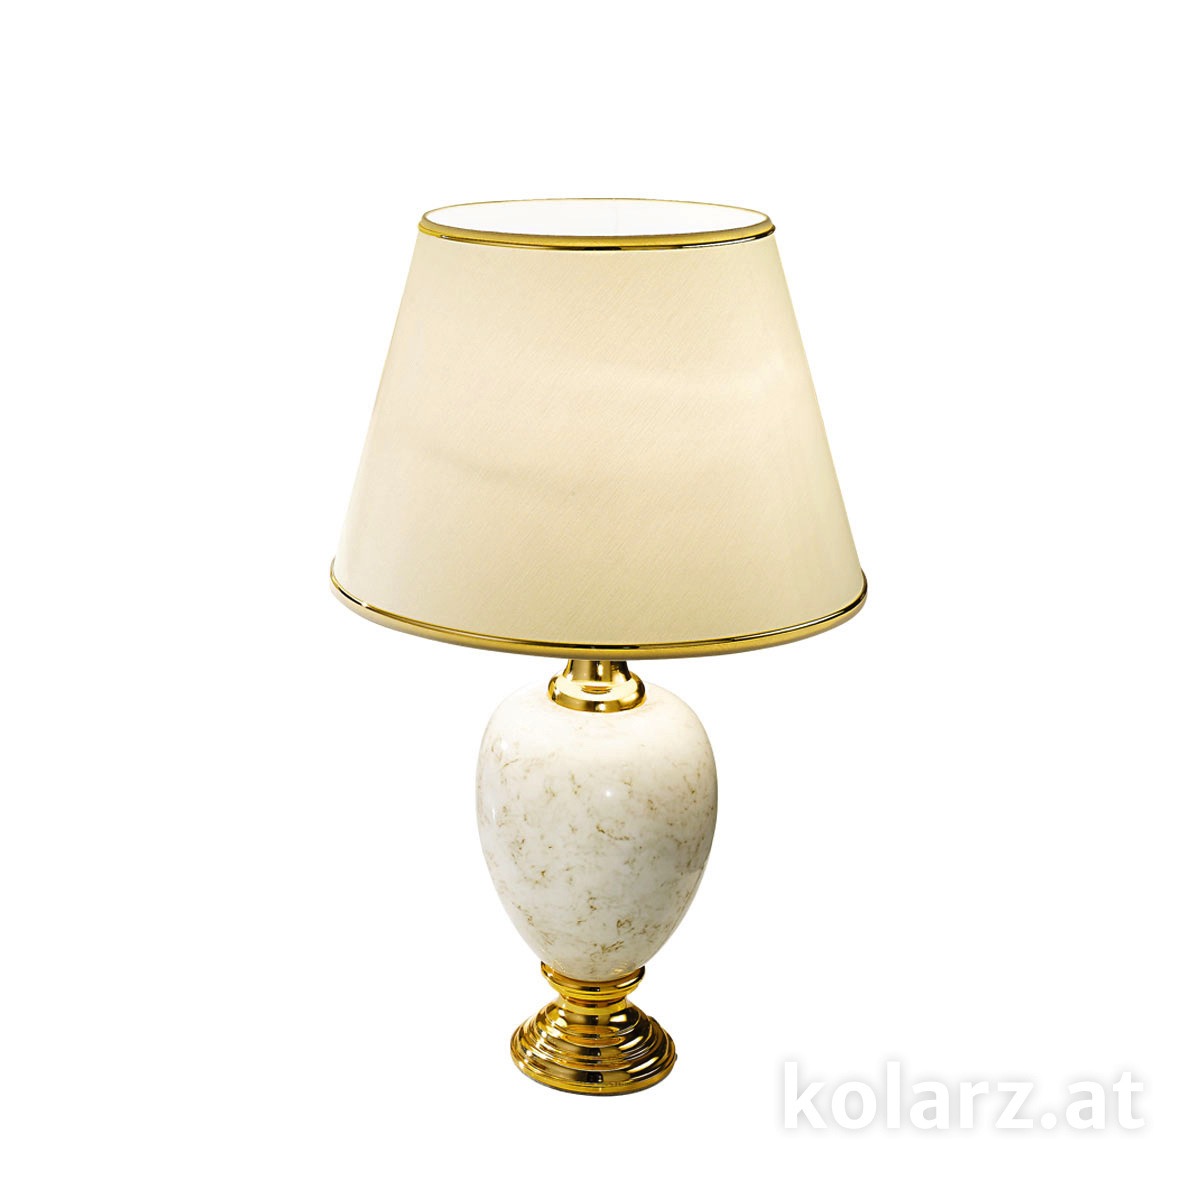 KOLARZ LeuchtenTischleuchte | table lamp Dauphin